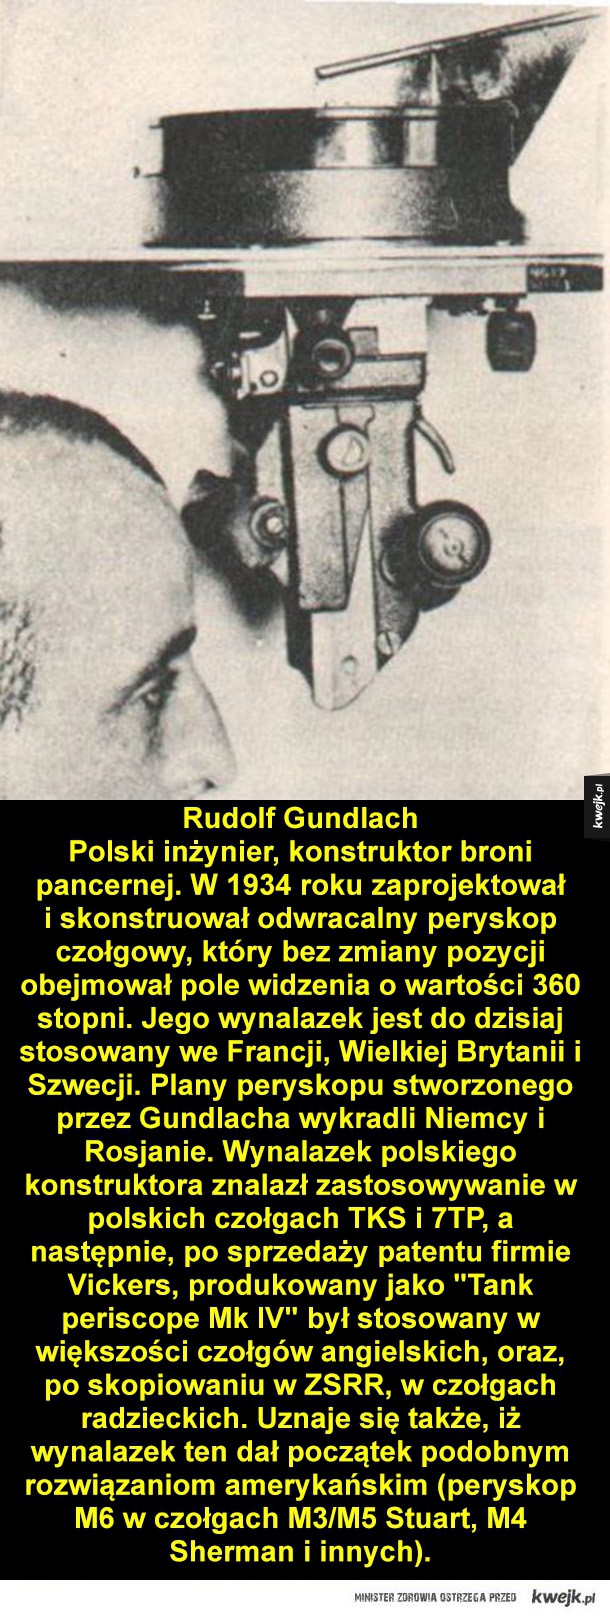 Genialni polscy wynalazcy,  o których niewielu już pamięta